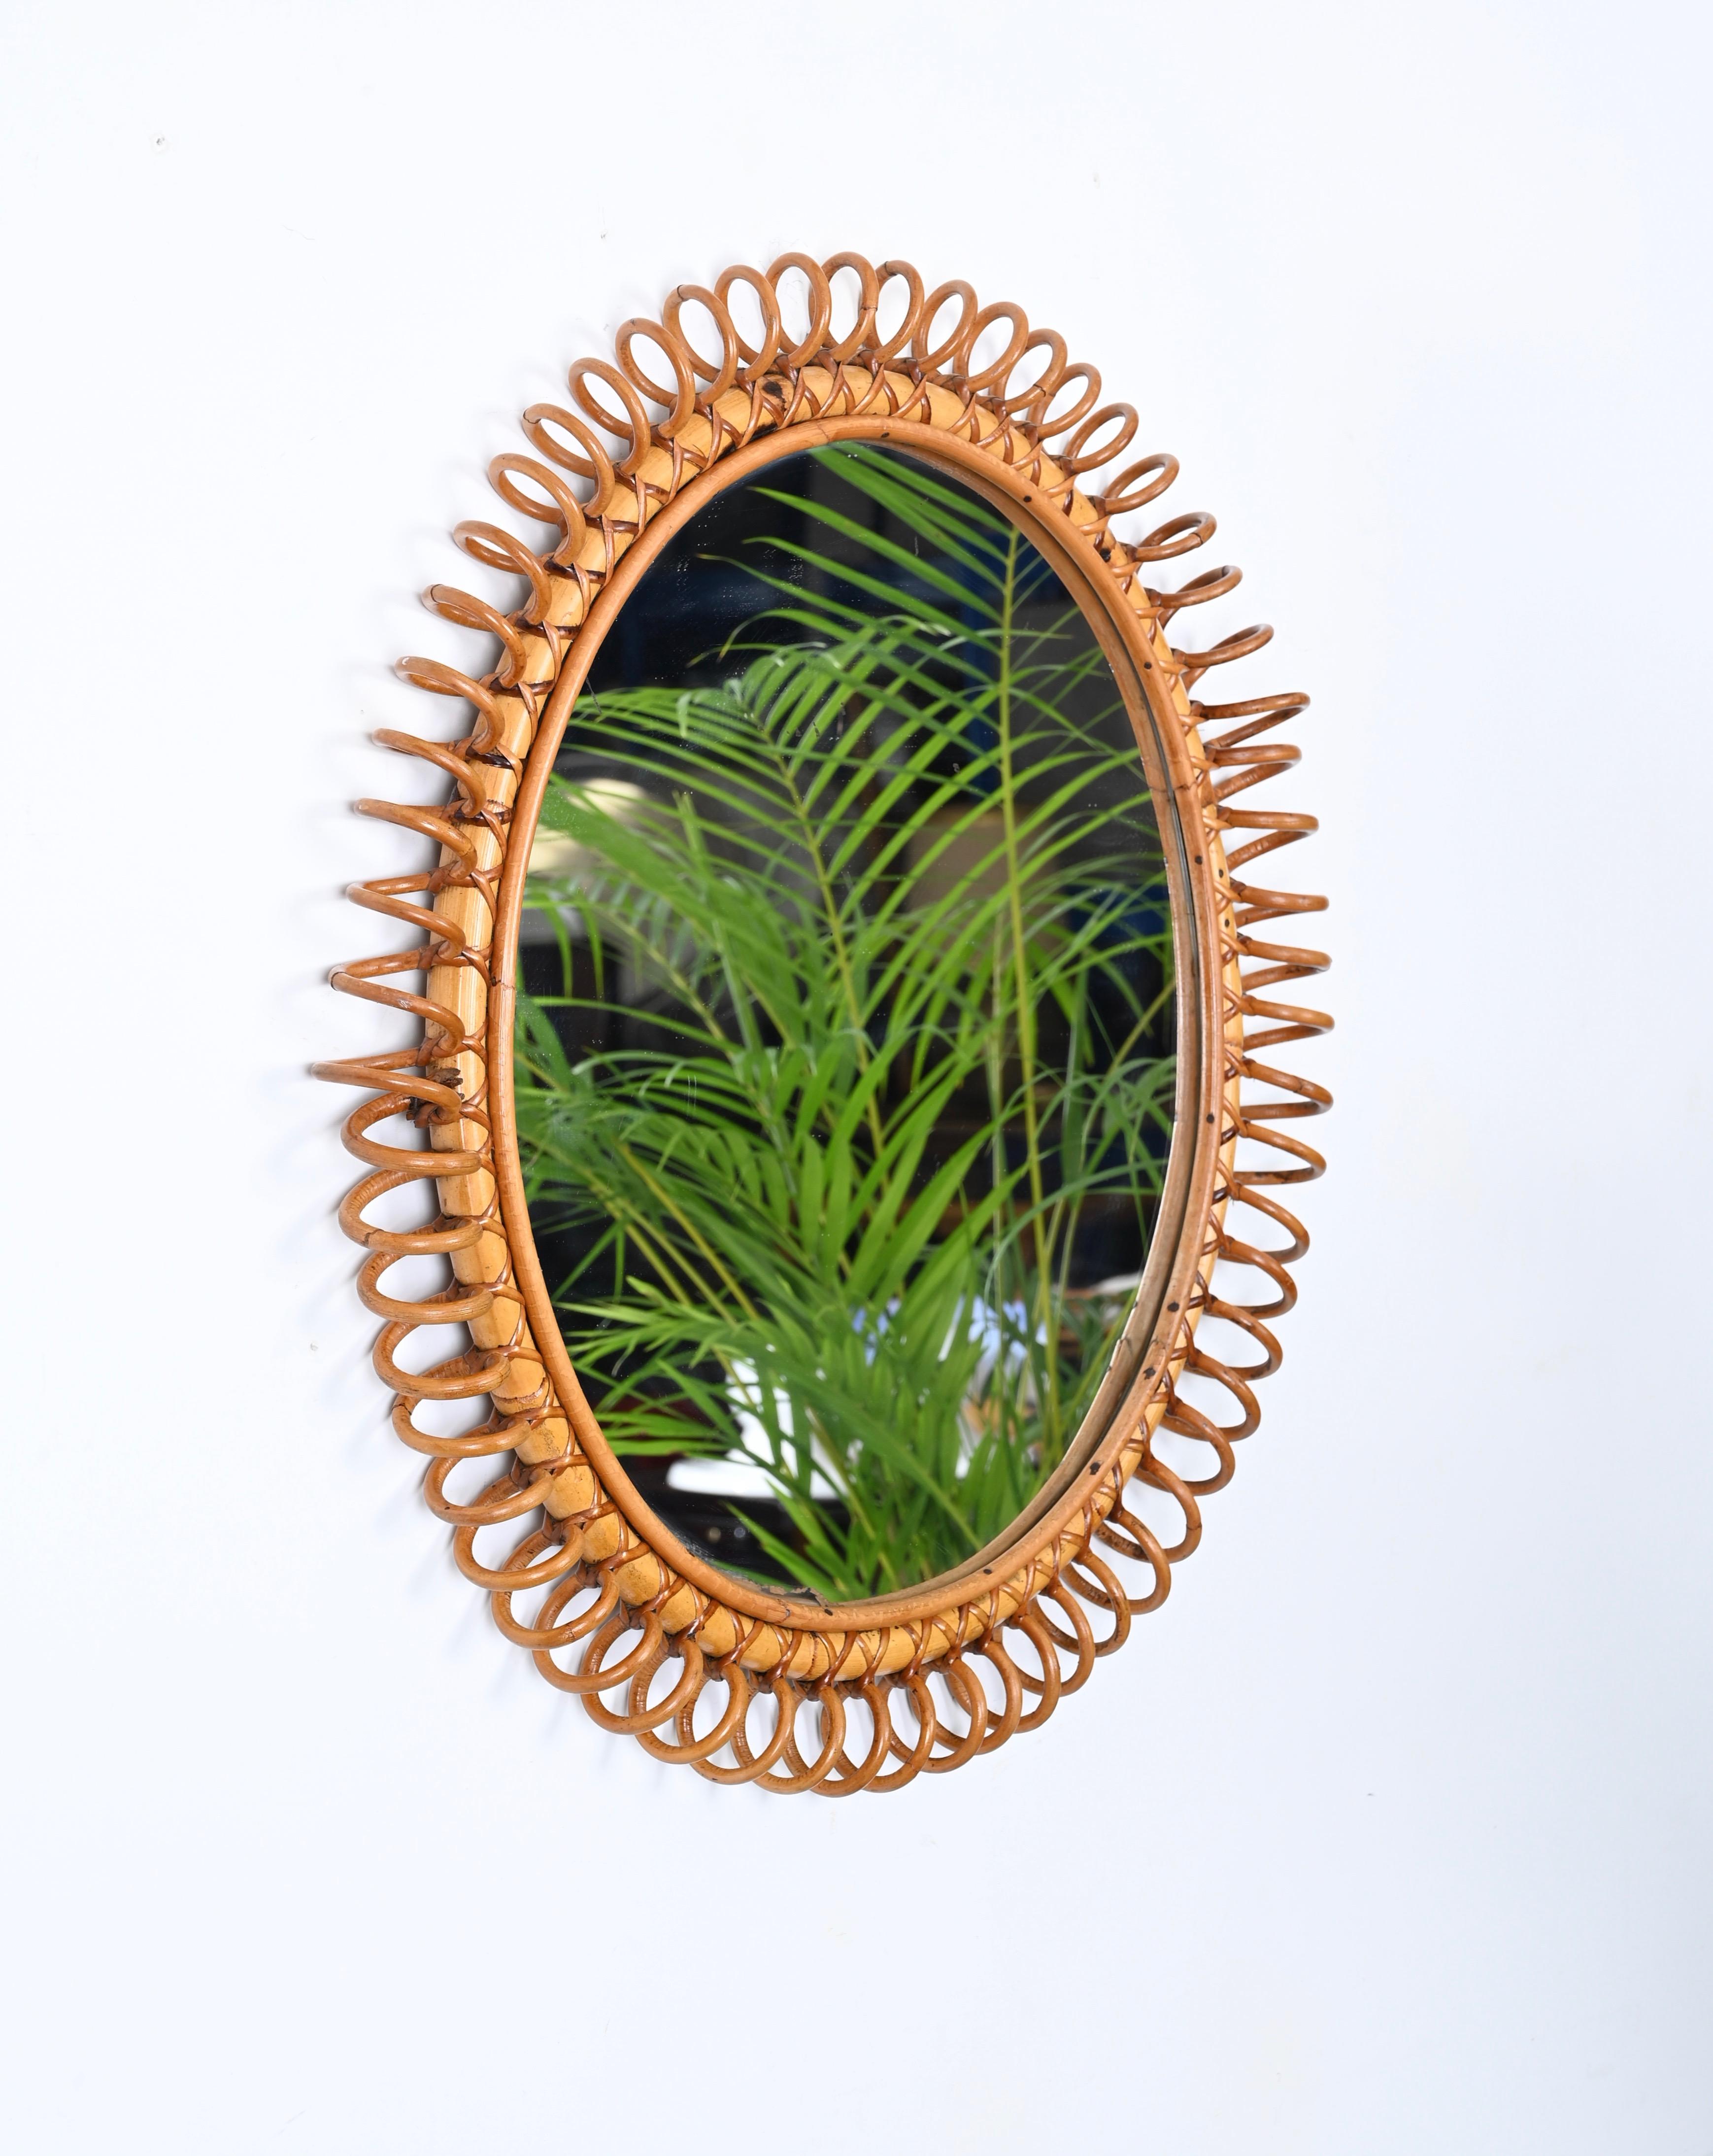 Merveilleux grand miroir de forme ronde du milieu du siècle en rotin, bambou et osier courbé. Cette pièce fantastique a été conçue en Italie dans les années 1960 dans le style de la Côte d'Azur. 

Ce joli miroir présente un superbe cadre en forme de